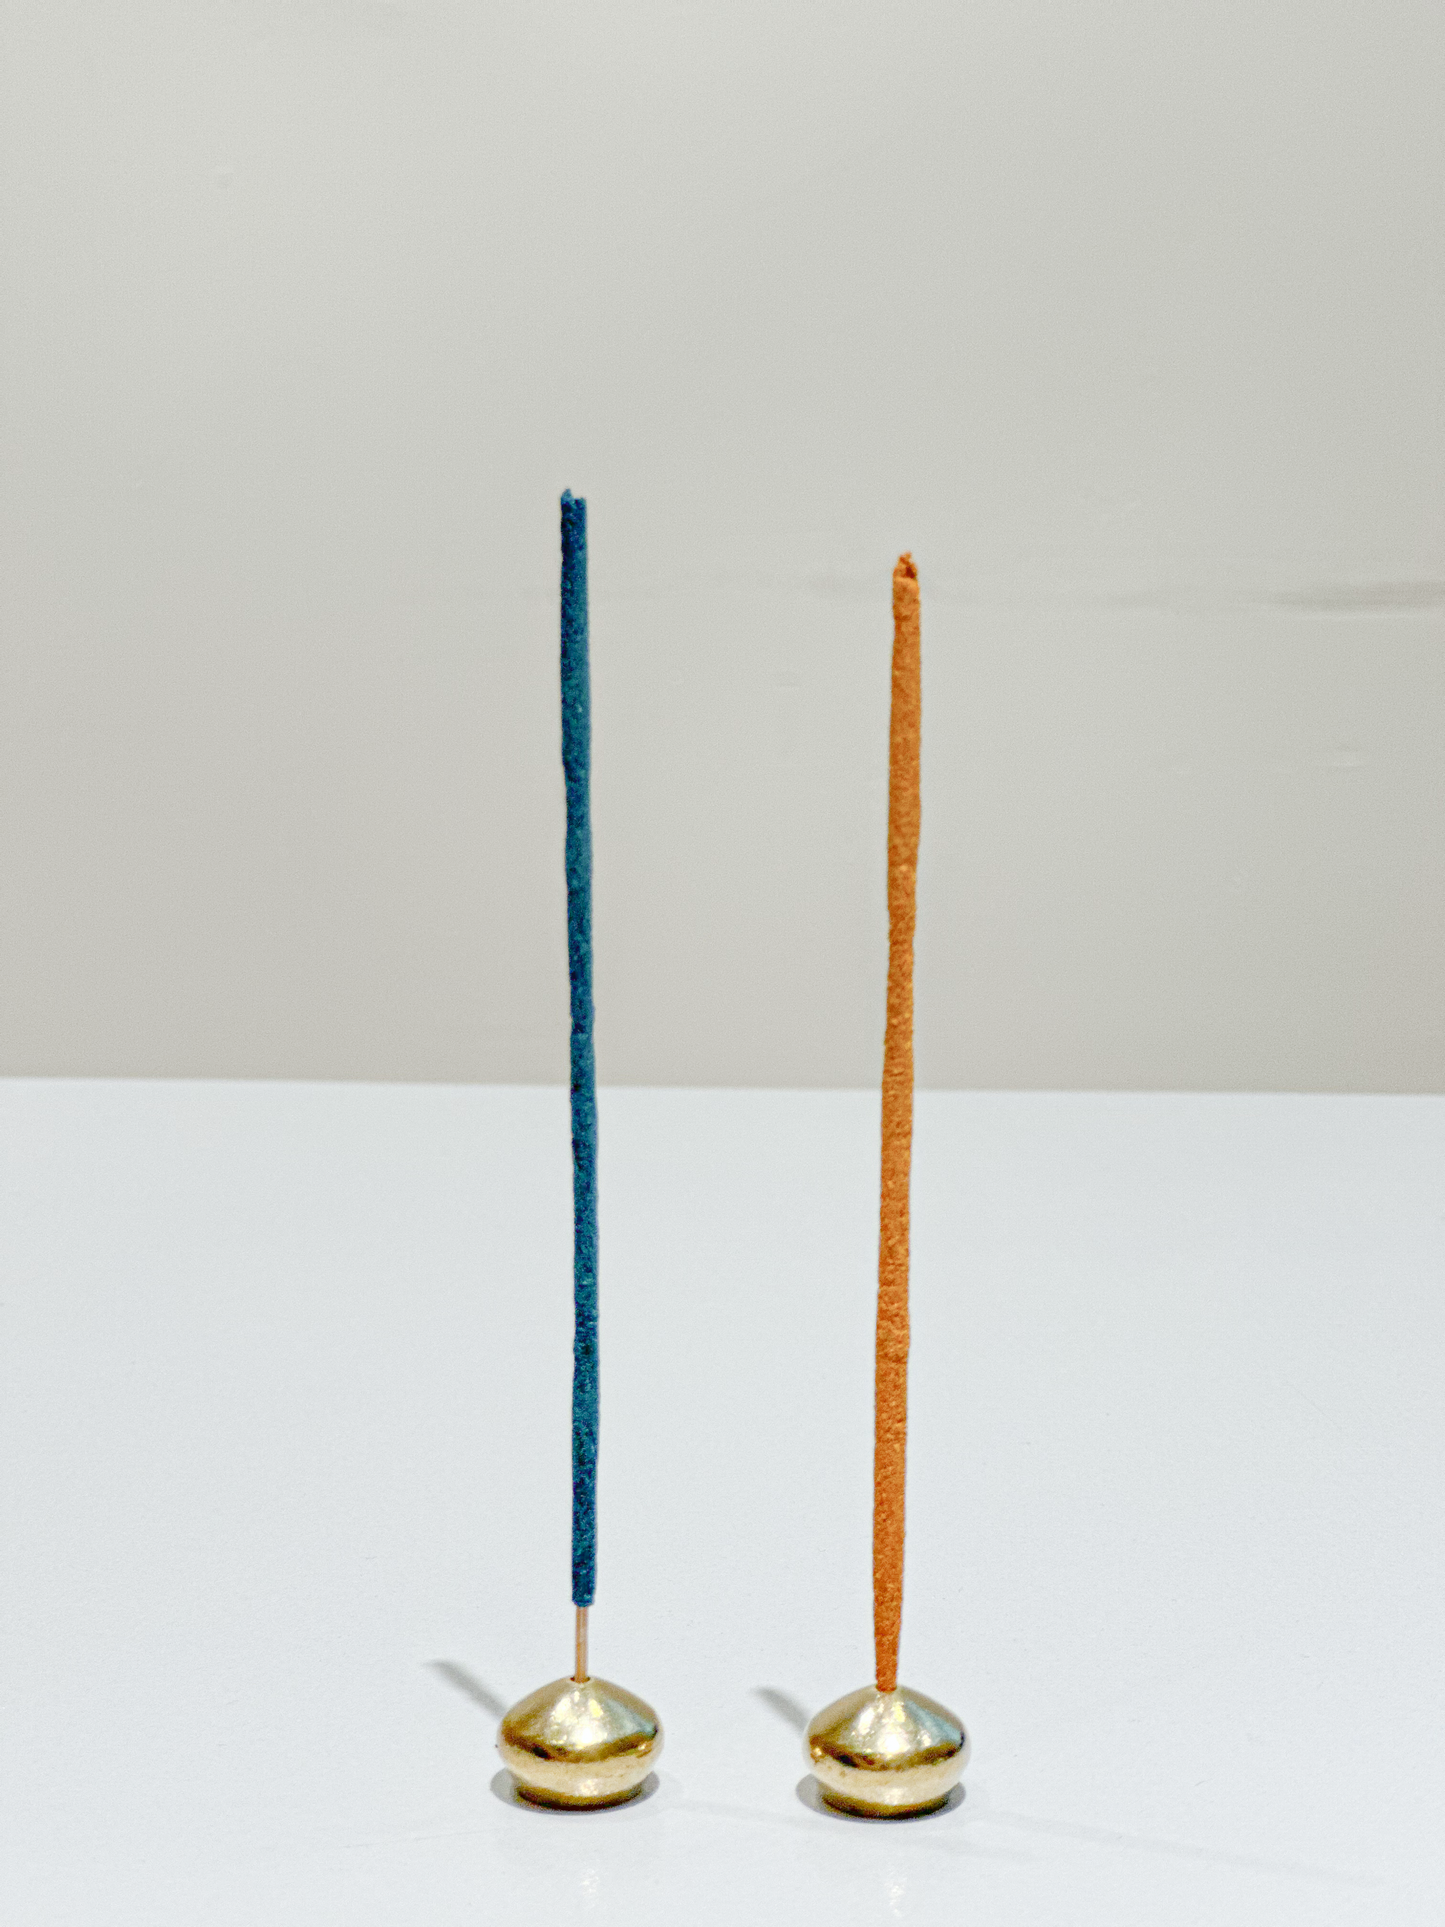 "Welcome Summer" Hong Kong handmade incense sticks